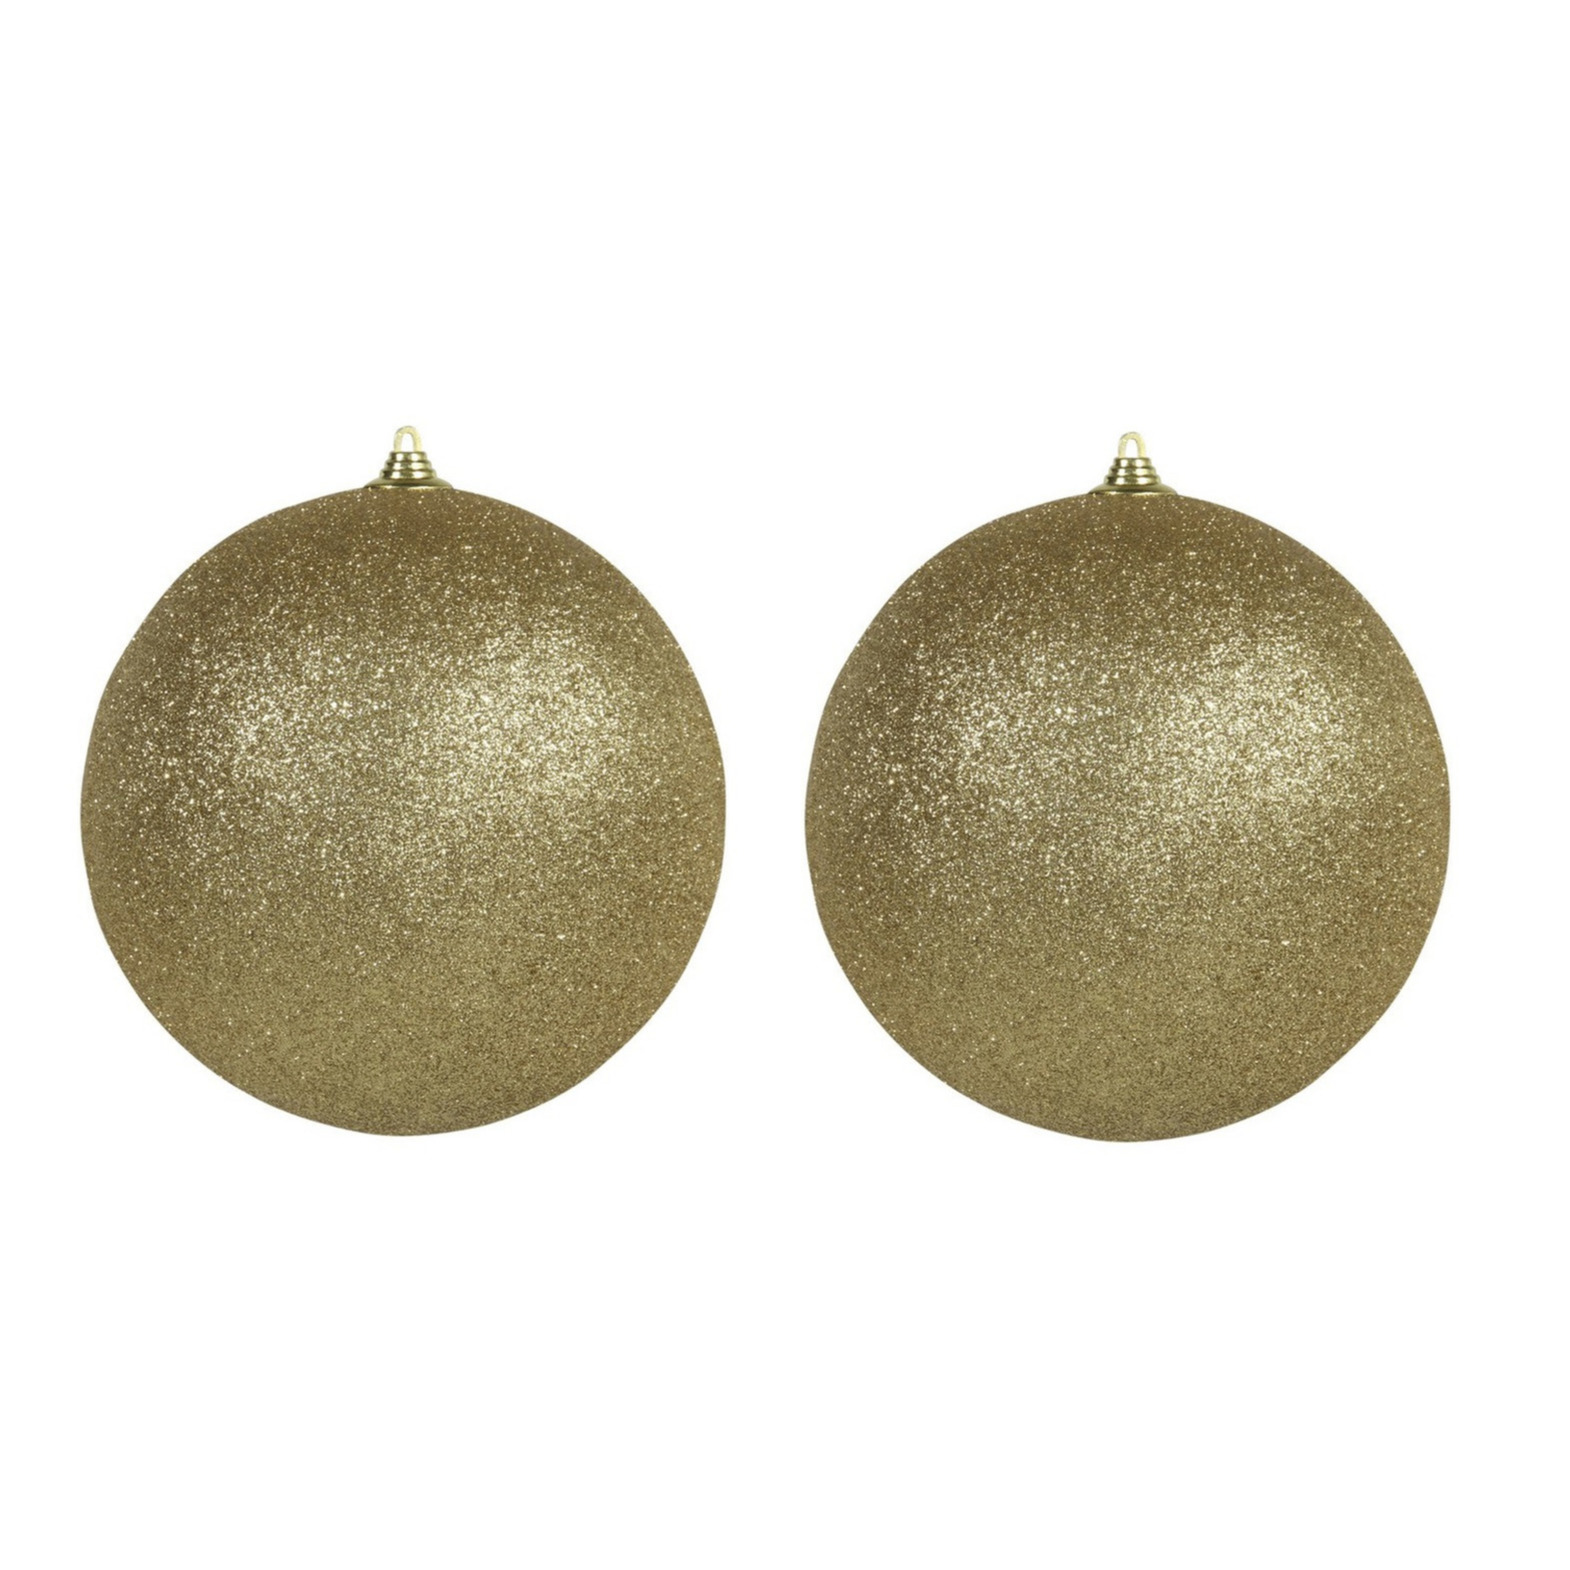 3x Gouden grote kerstballen met glitter kunststof 18 cm